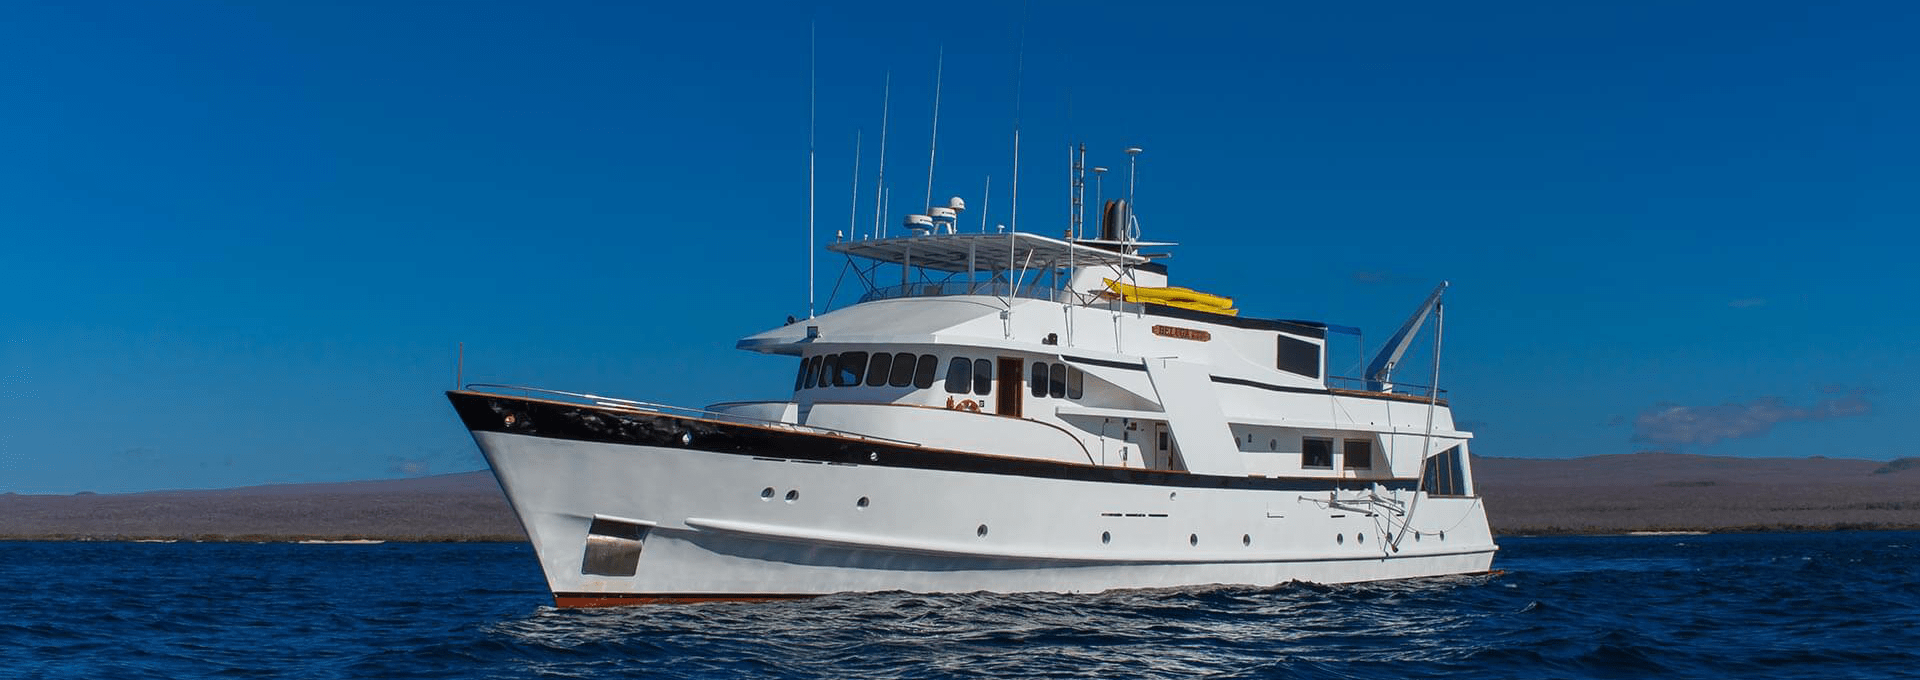 Beluga yacht galapagos